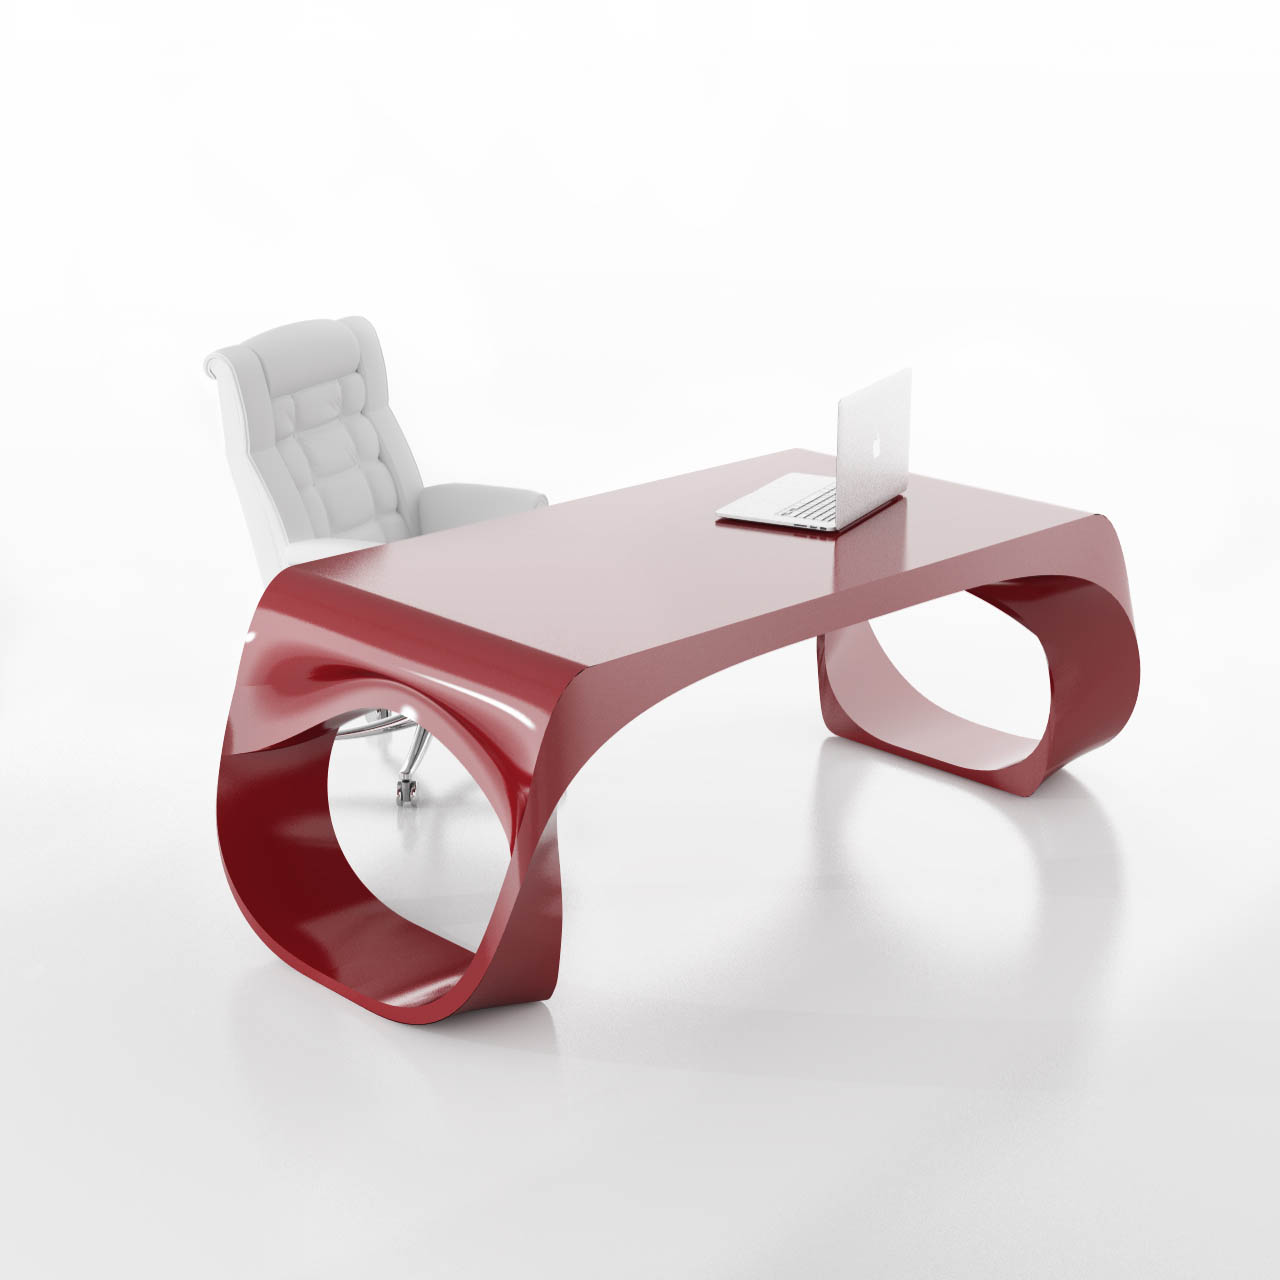 LUMIA  ZAD - Zone of Absolute DesignLampade design spettacolare. Lumia by  Pasquali designer per Zad.